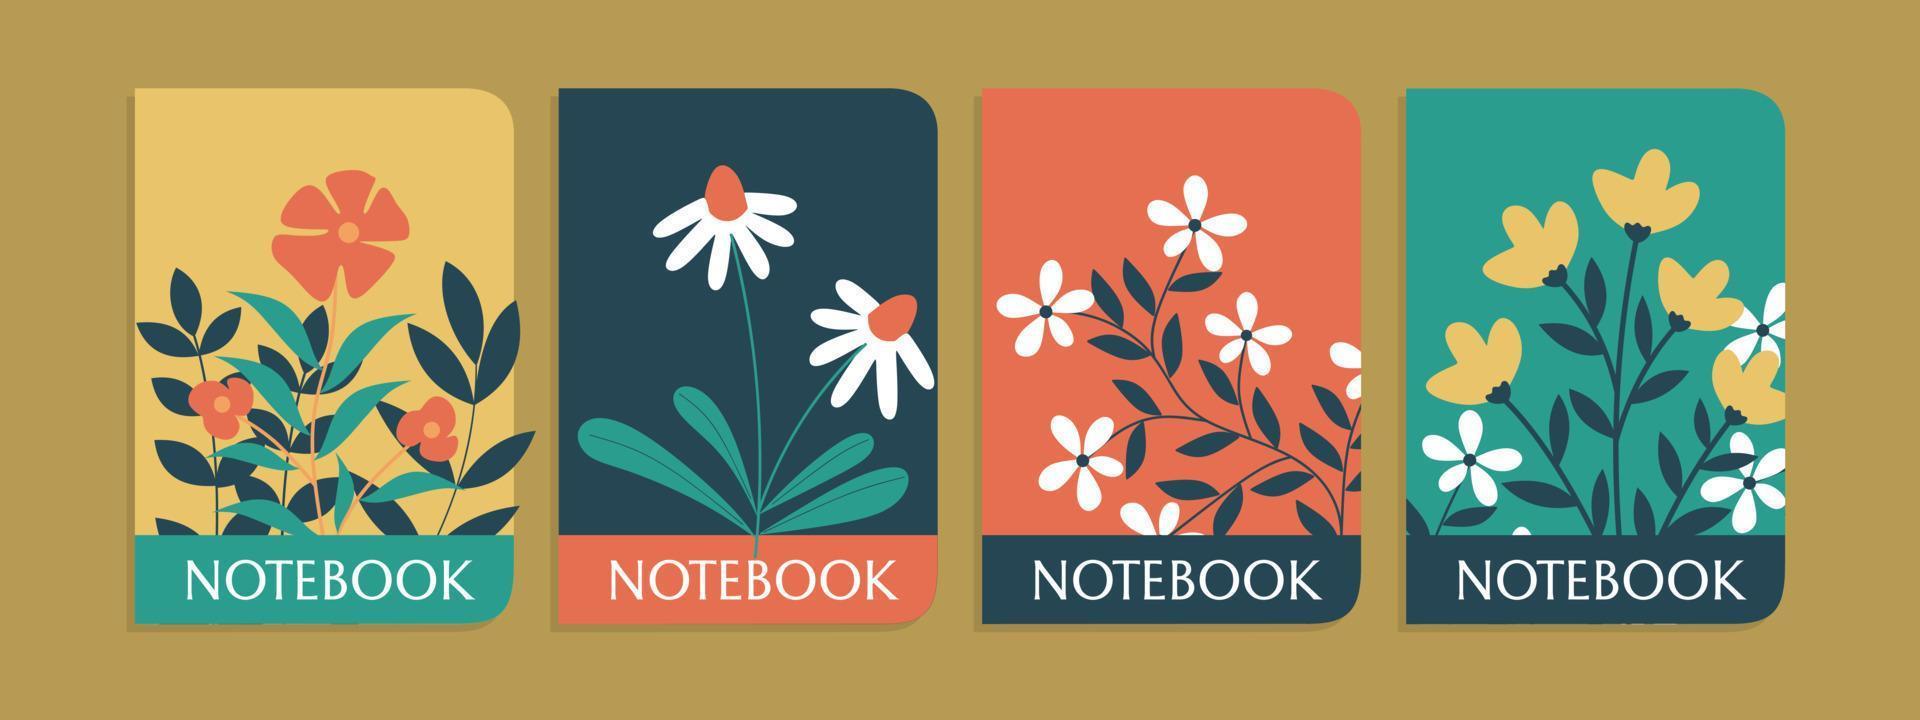 establecer una cubierta colorida para cuaderno con flores dibujadas a mano.libros para niños, folletos, plantillas para diarios escolares.antecedentes abstractos vector